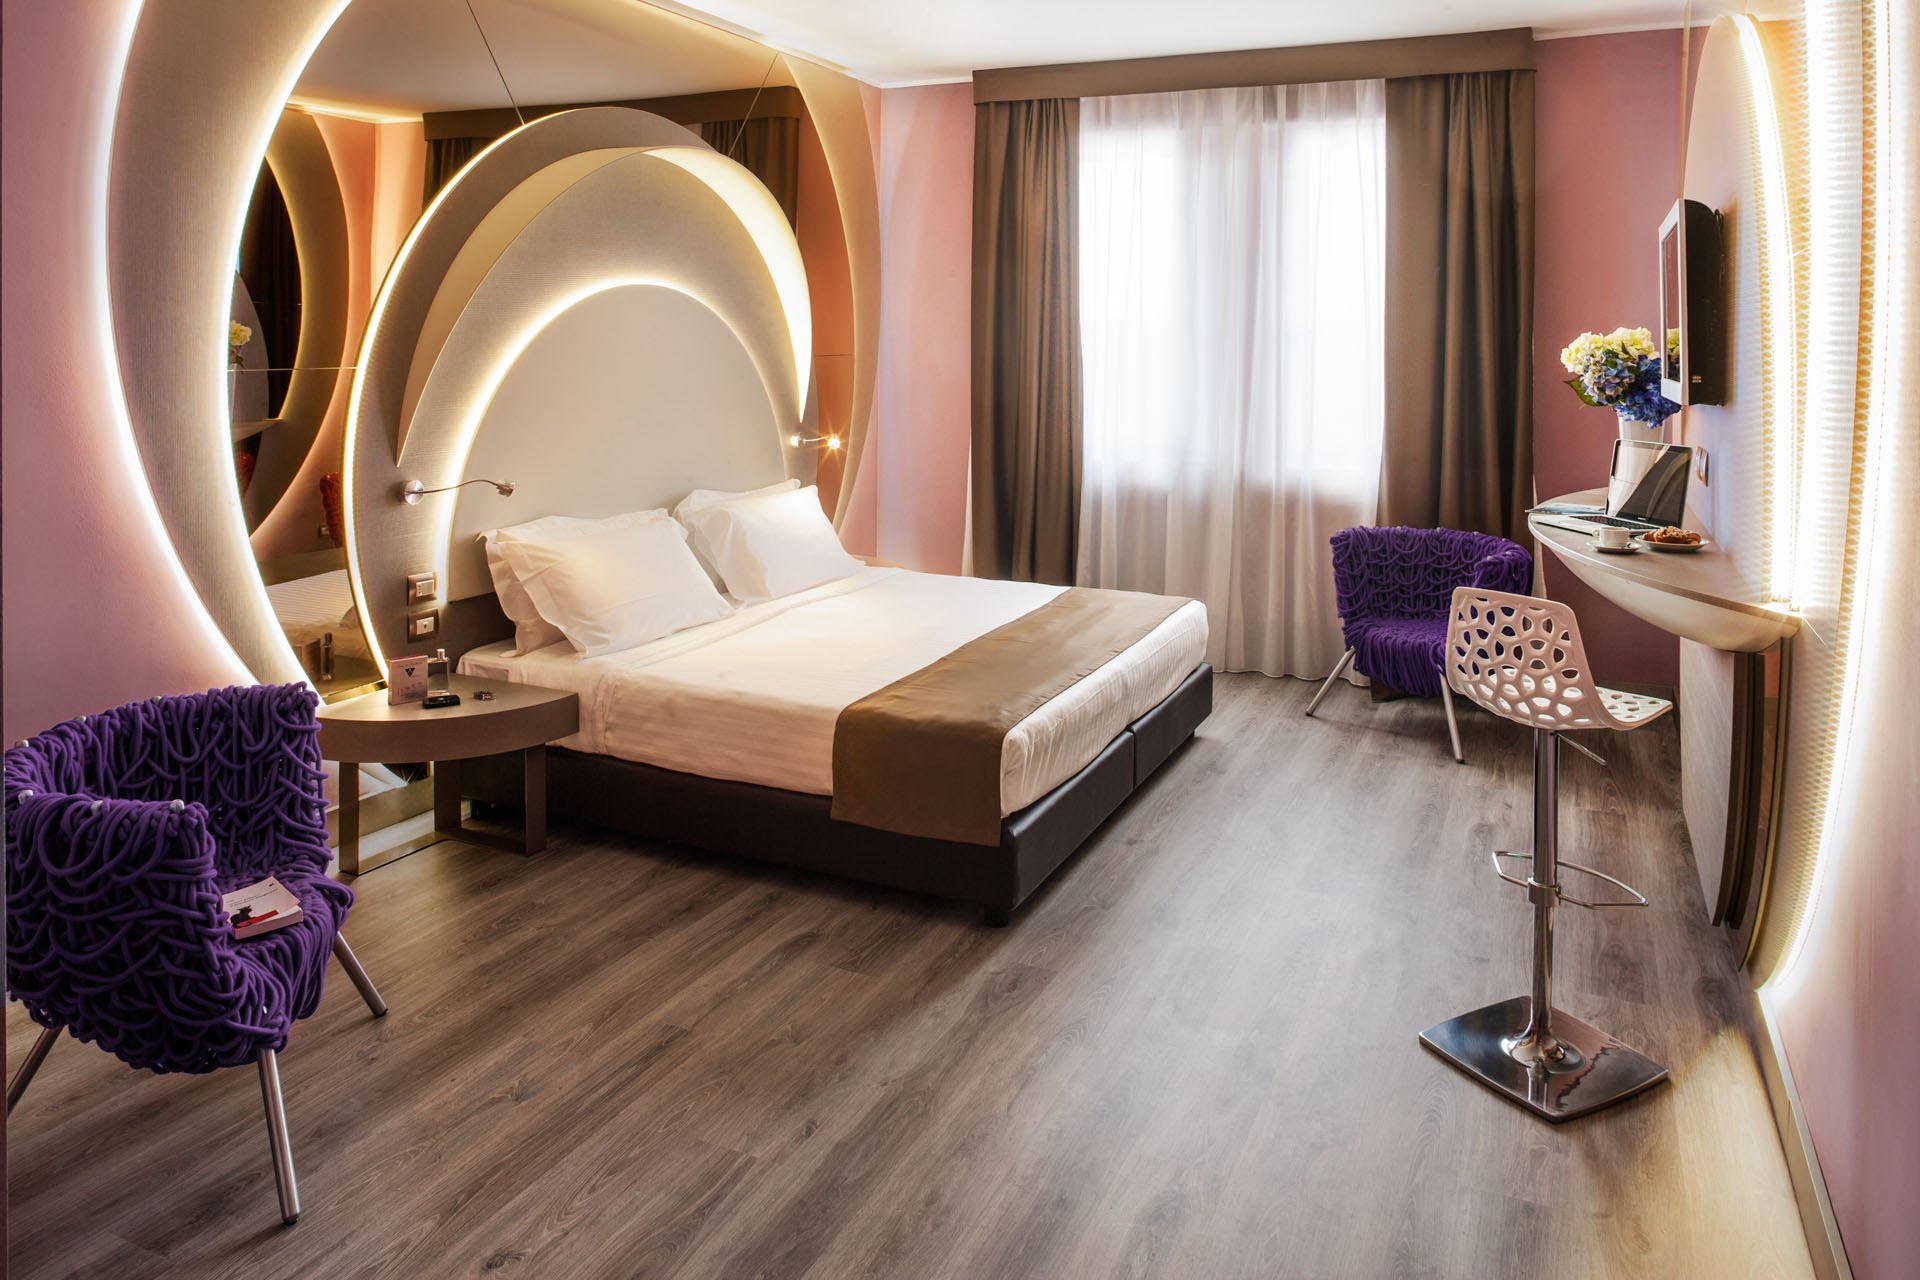 camera letto luxury Hotel Da Vinci di Milano 4 stelle lavoro realizzato dal Gruppo Rodi